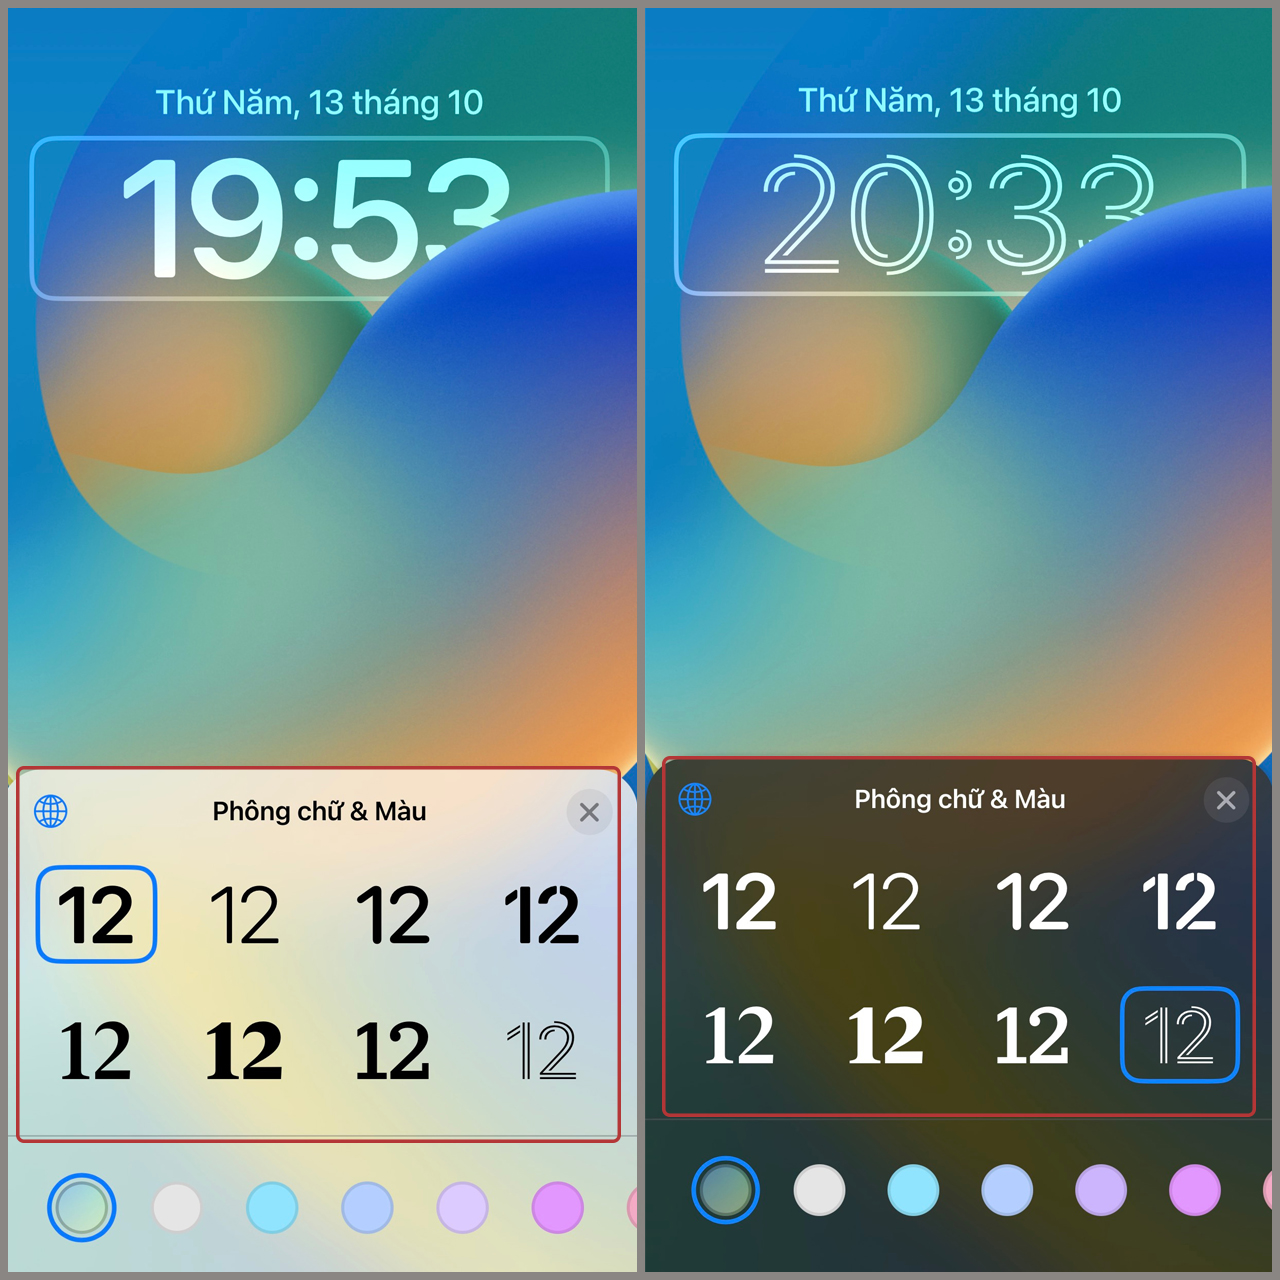 Tính năng đổi kiểu đồng hồ trên iOS 16 của Apple là một sự pha trộn giữa hiện đại và truyền thống, mang đến cho người dùng những lựa chọn đa dạng. Cùng với tính năng độc đáo này, bạn có thể tạo ra phong cách riêng cho chiếc đồng hồ của mình. Hãy khám phá ngay bằng cách nhấn vào hình ảnh liên quan.